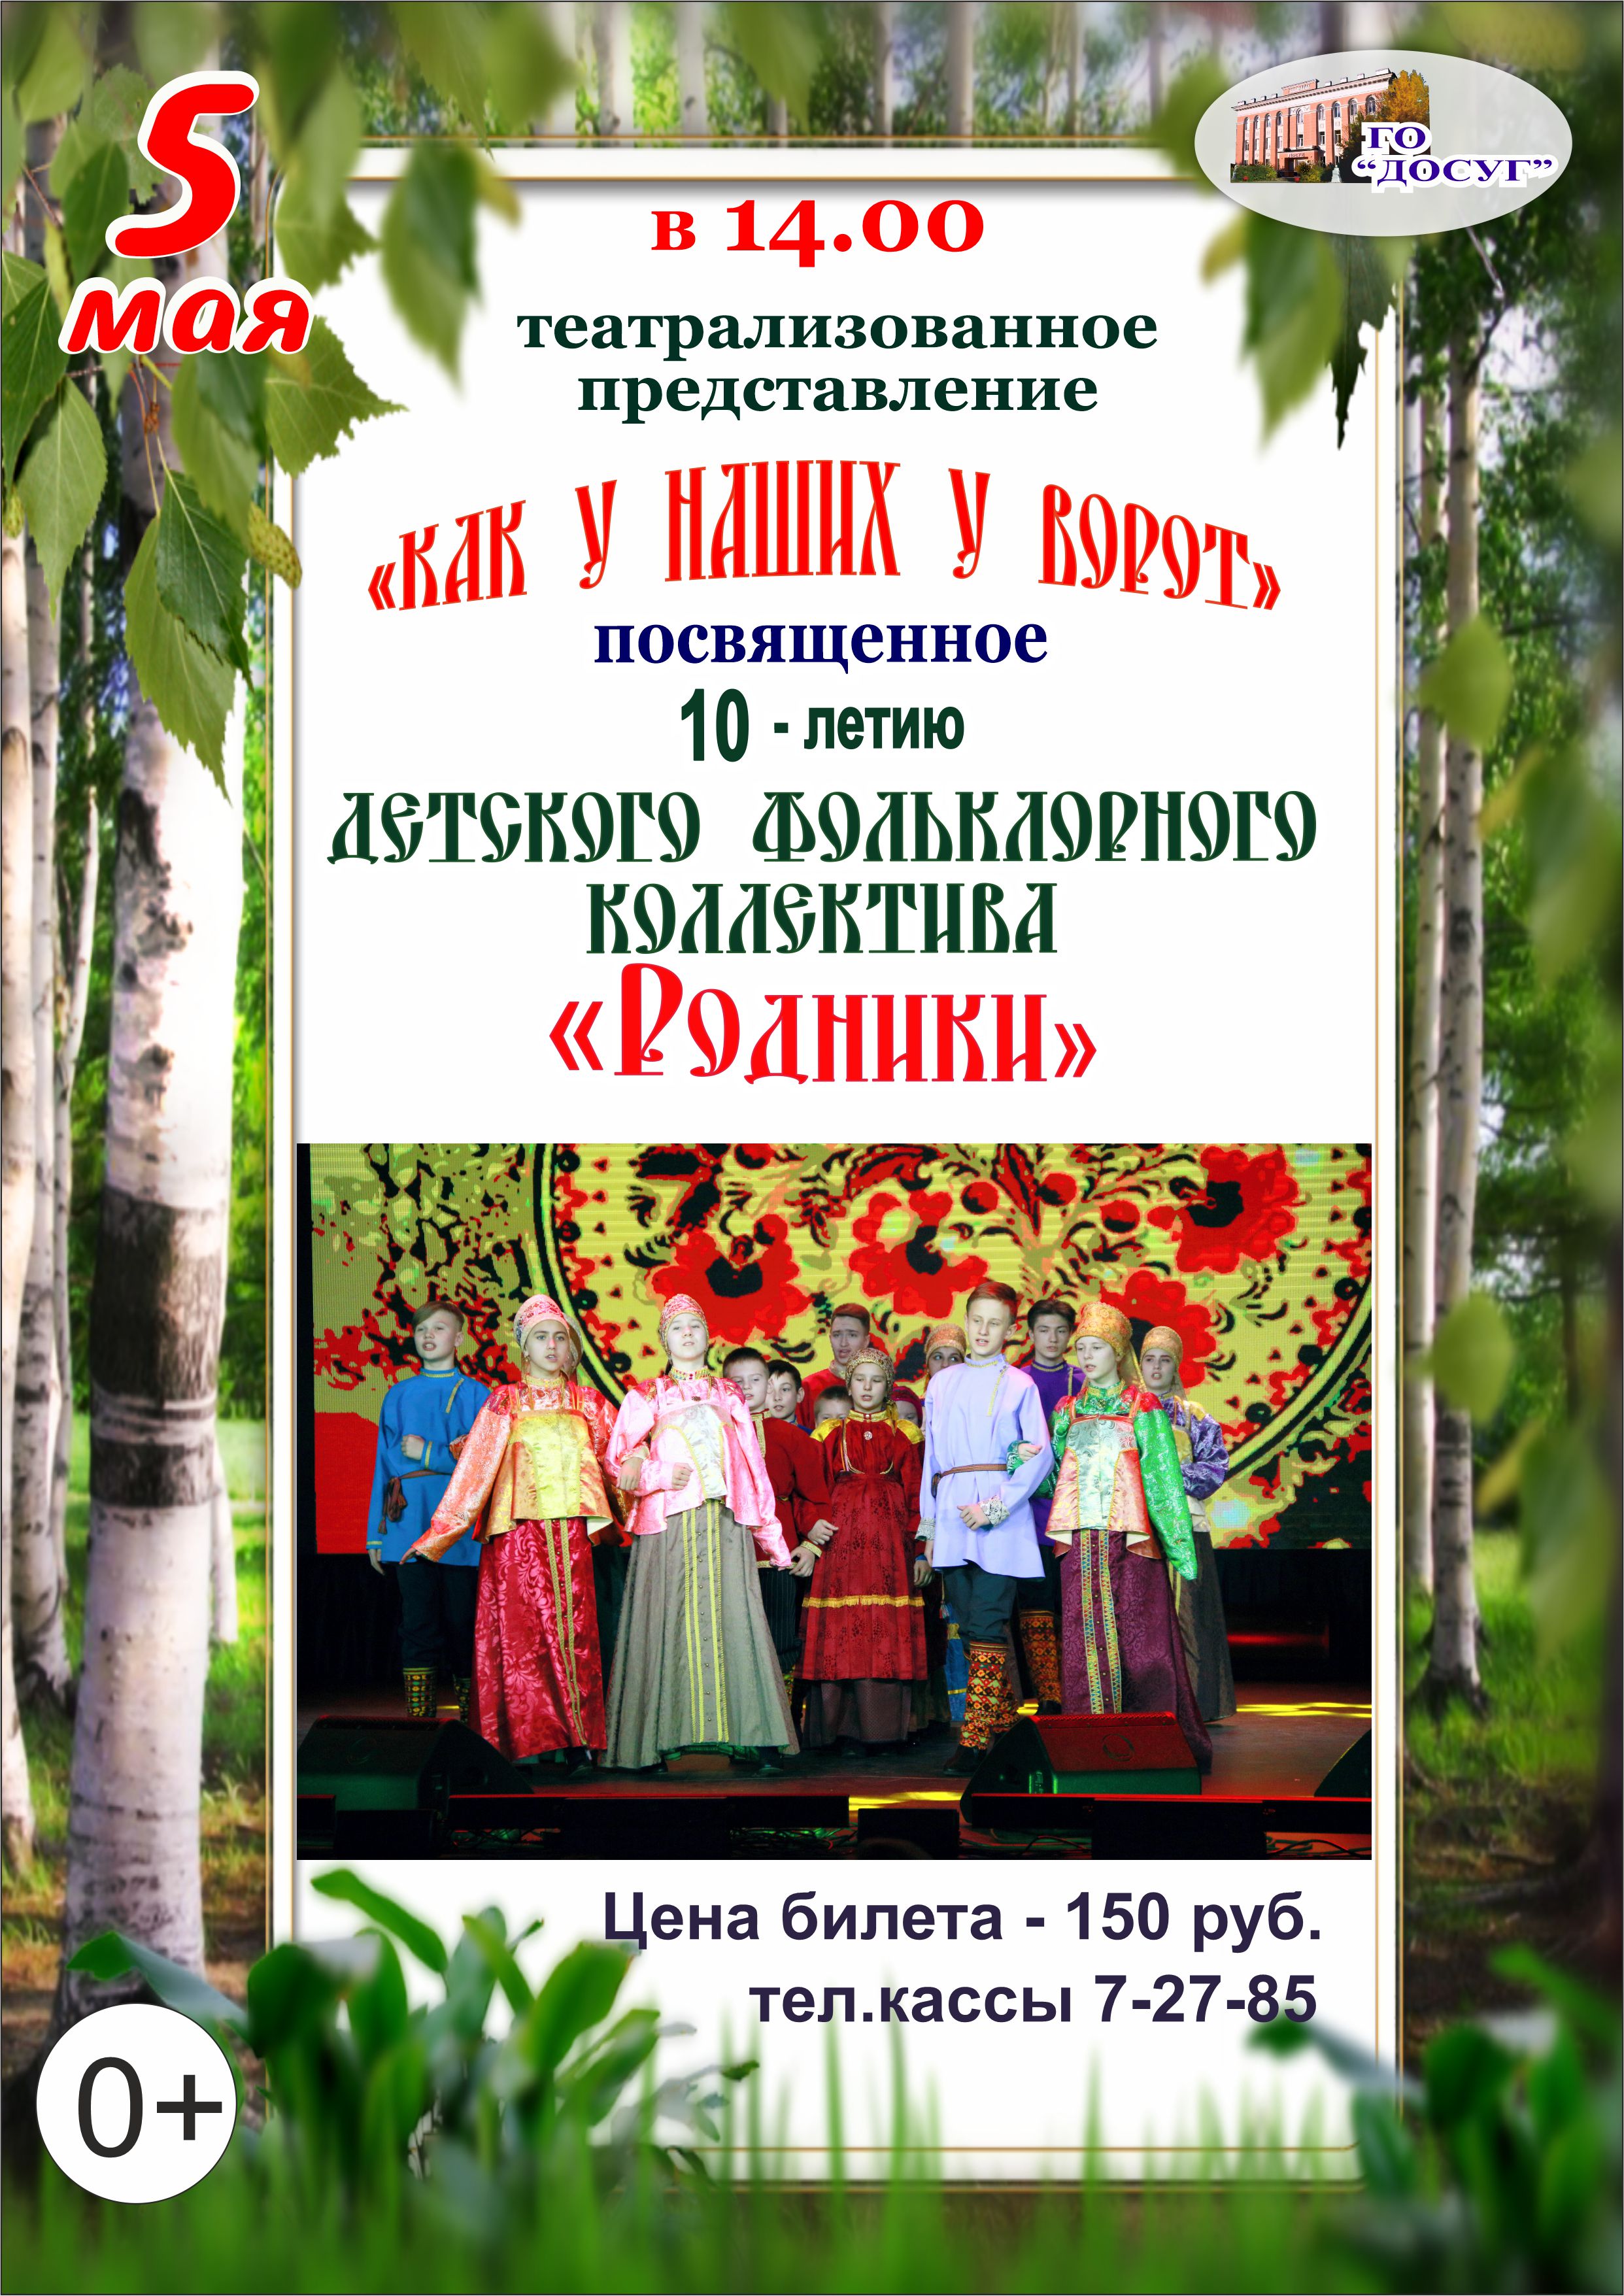 —- 05 мая в 14.00 Театрализованное представление «Как у наших у ворот» цена билета: 150 руб. возрастной ценз 0+